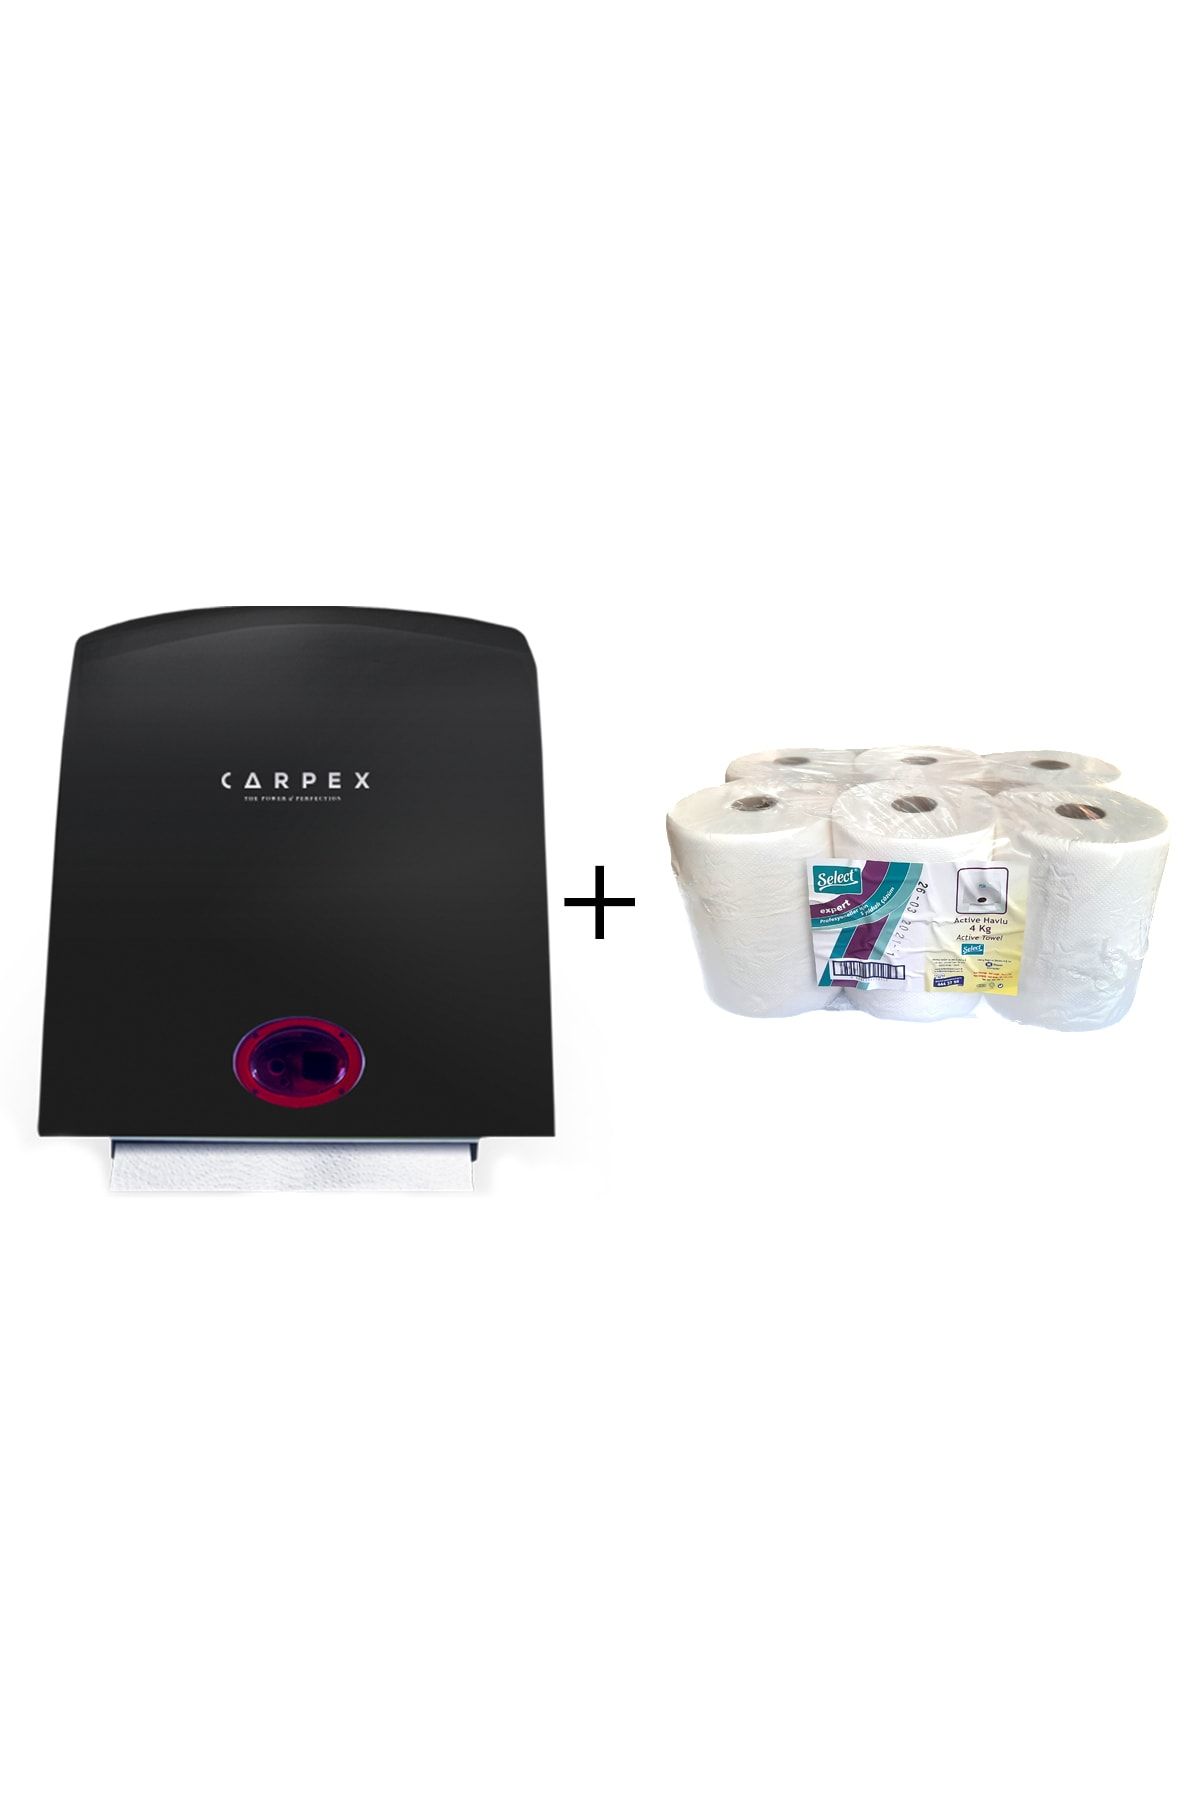 Carpex Sensörlü Kağıt Havlu Makinesi Siyah + Select Hareketli Havlu 21 cm 4 kg 6 Lı